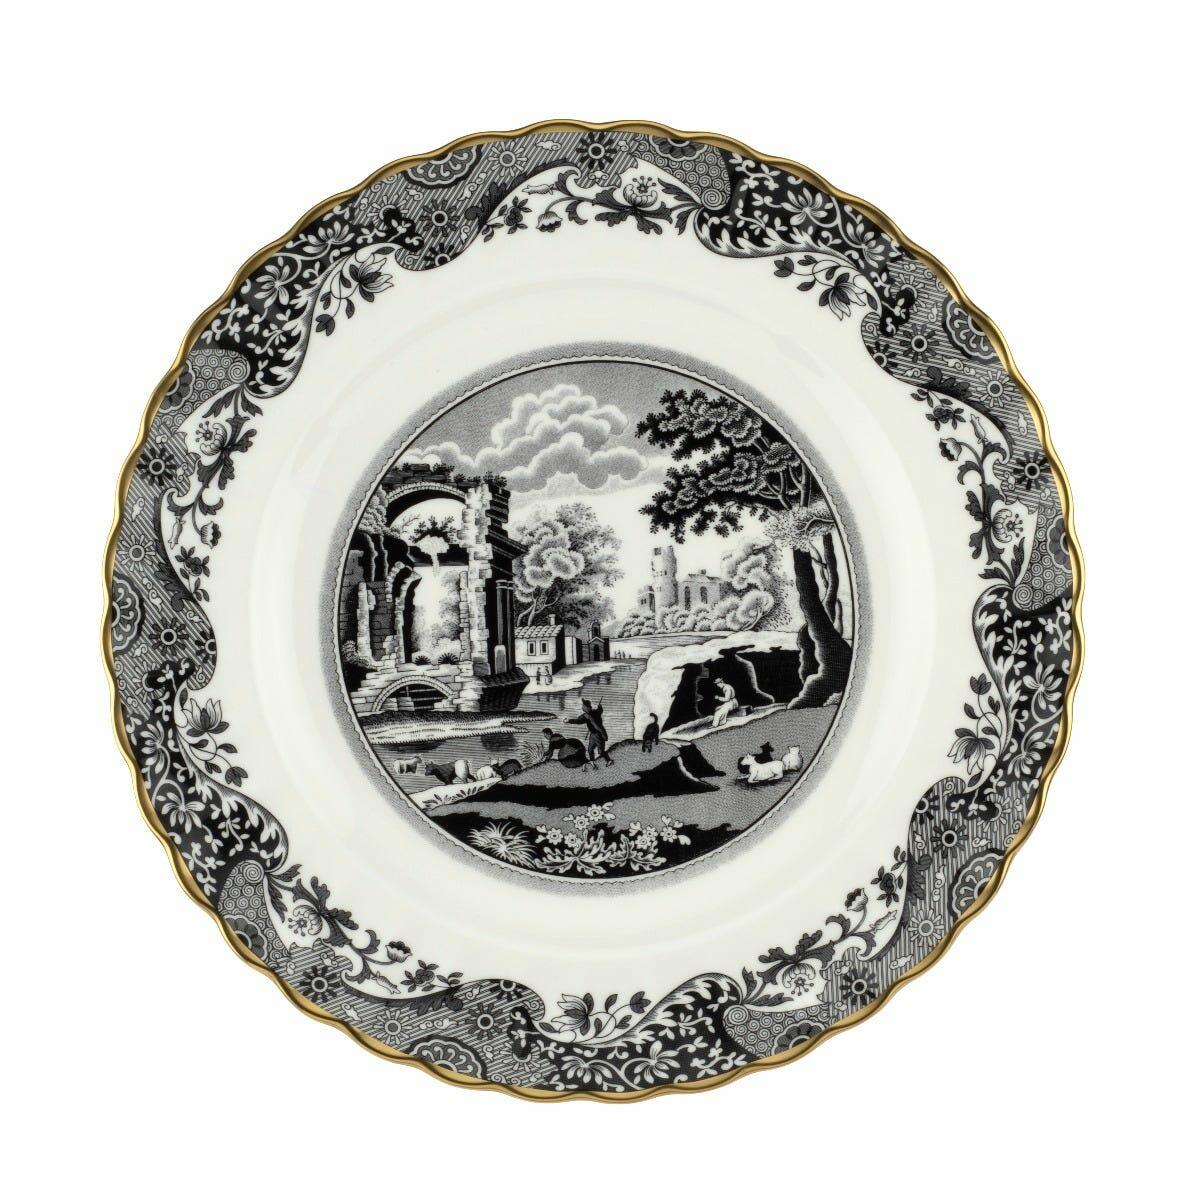 Fortnum & Mason Spode 1770 Italian Dinner Plate, Black